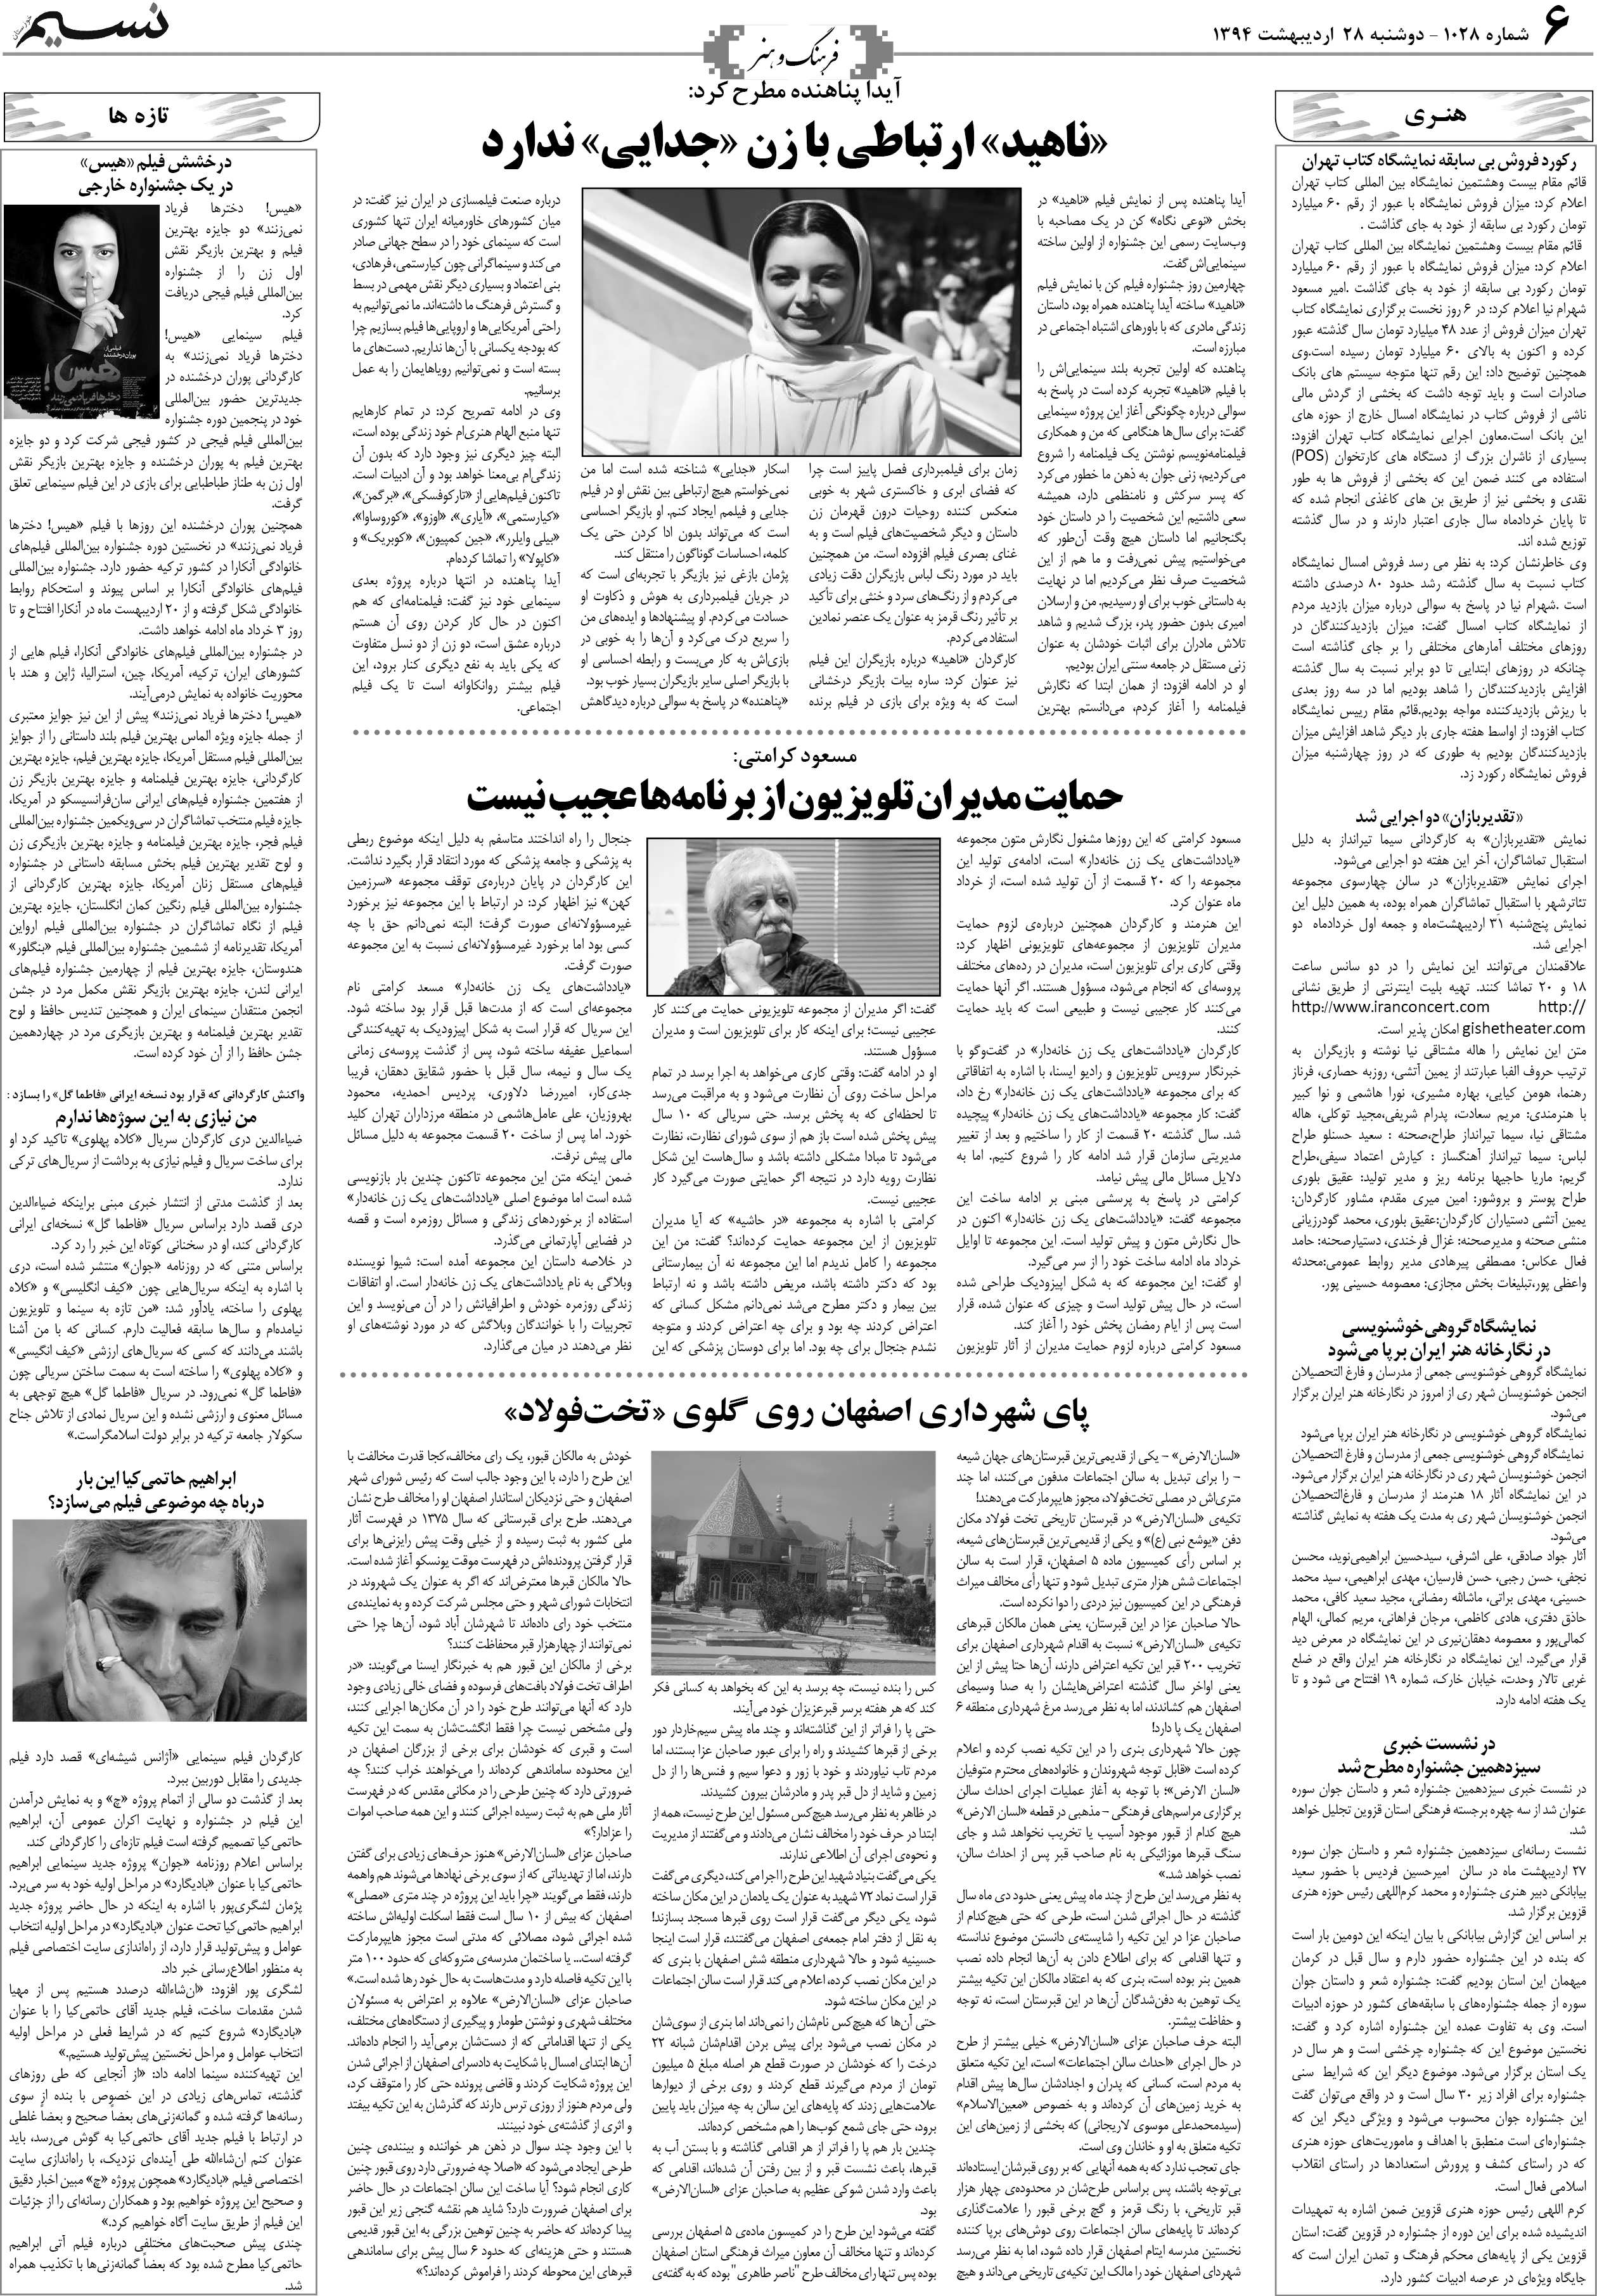 صفحه فرهنگ و هنر روزنامه نسیم شماره 1028